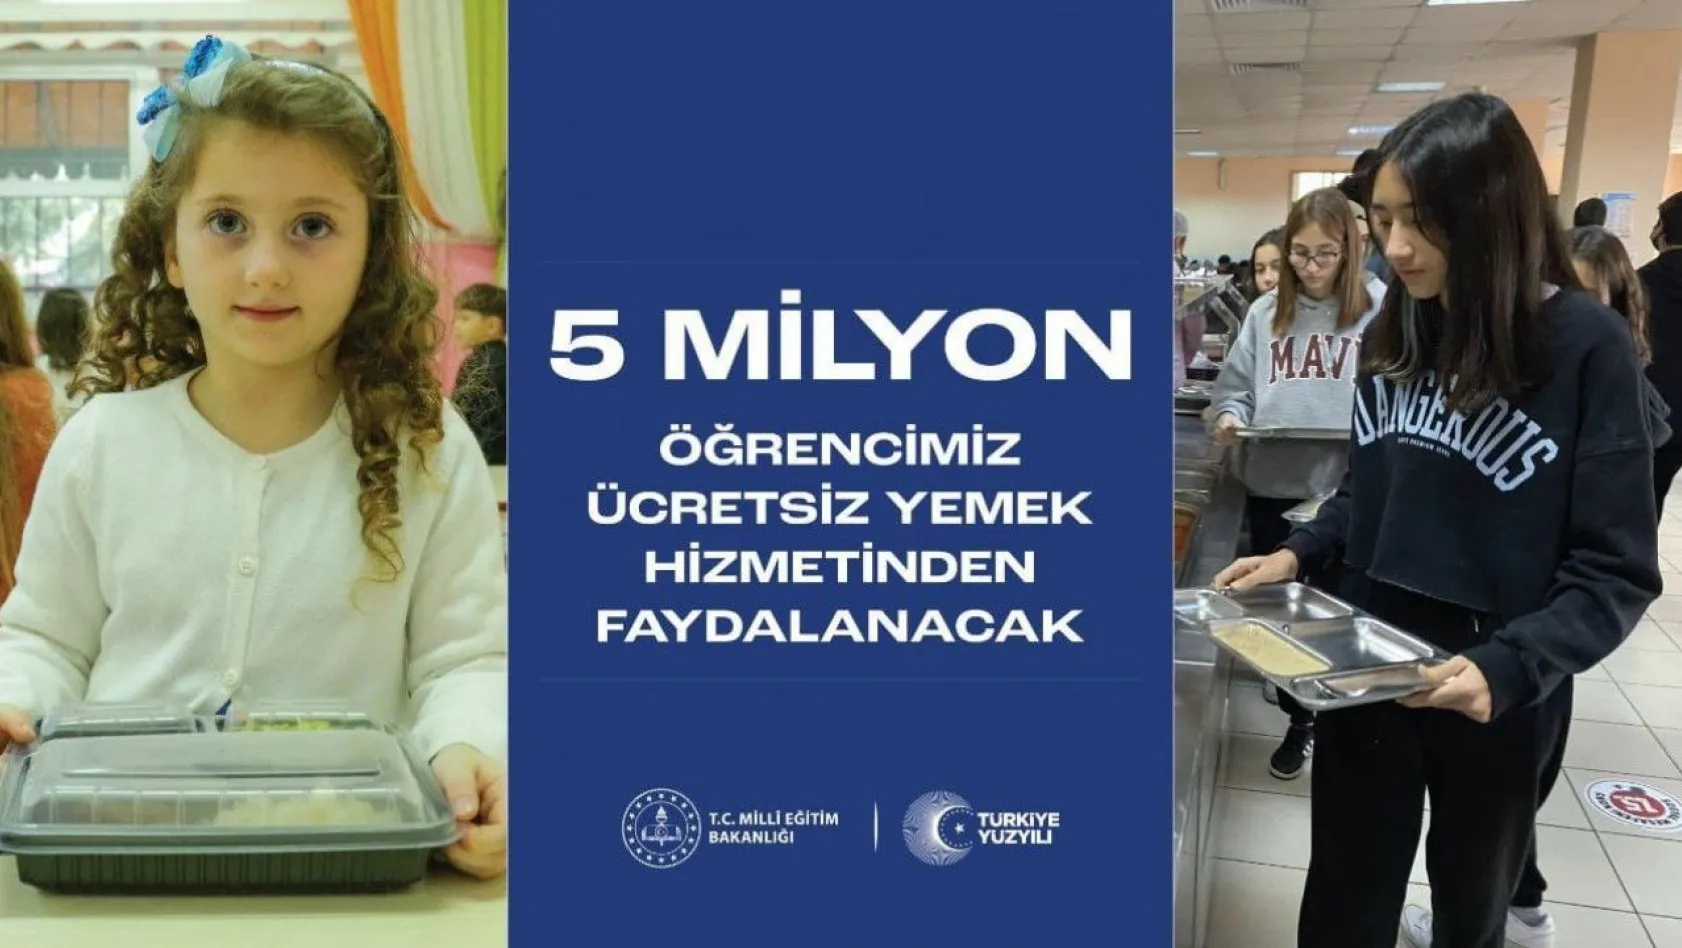 Türkiye'de 5 milyon, Kayseri'de 32 bin 717 öğrenciye ücretsiz yemek verilecek